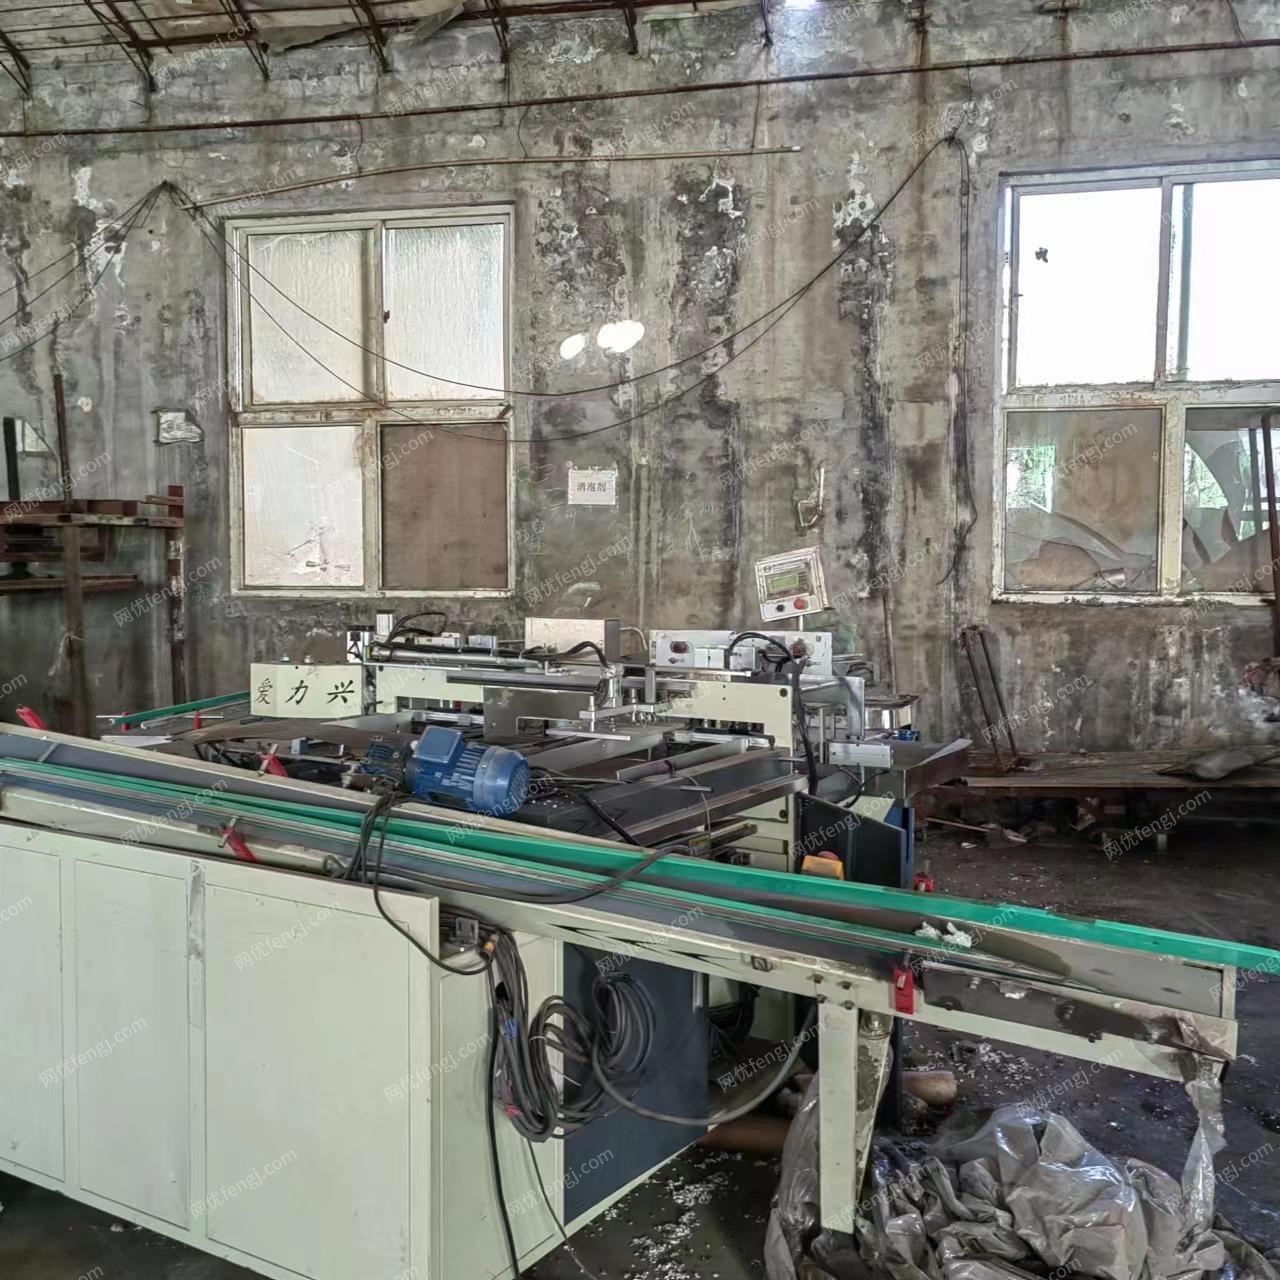 纸制品厂处理1880/3000半自动,全自动复卷机,190,7排抽纸机,有图片